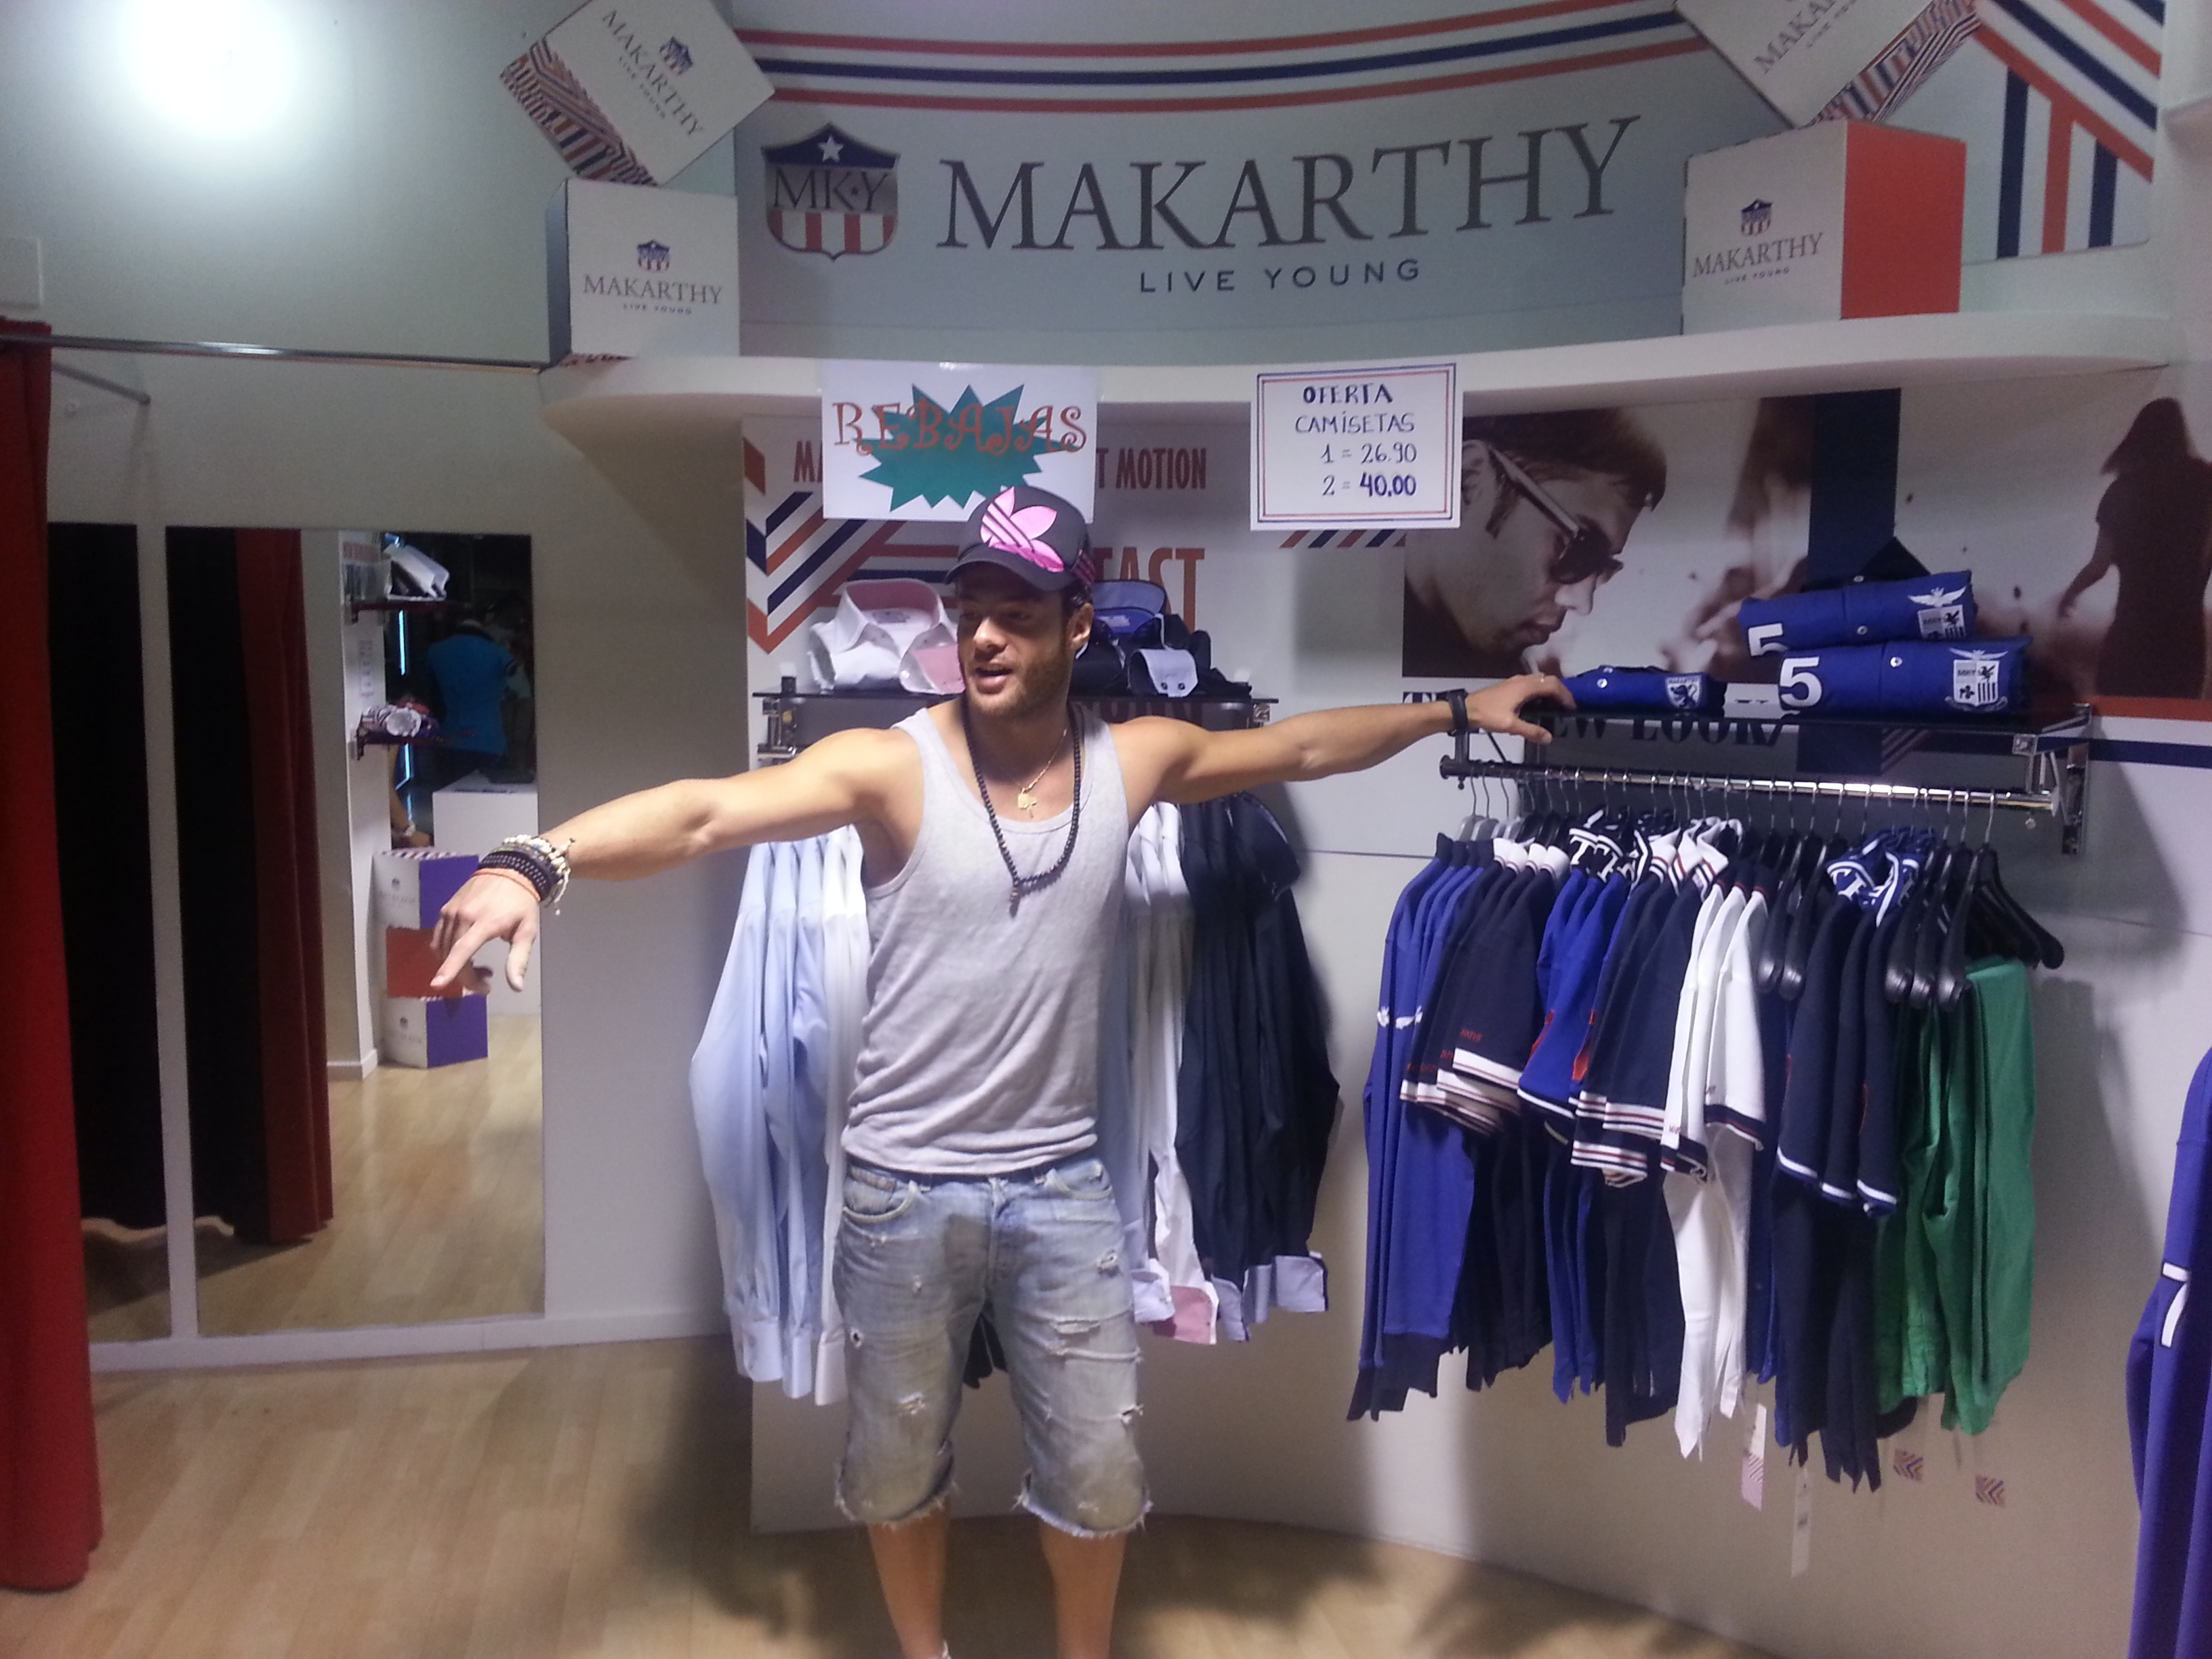 Alessandro Livi on "En la tienda Makarthy del mercado de Fuencarral-Madrid venir que la esta chula y en new colection! http://t.co/pbjZ59Jk" / Twitter